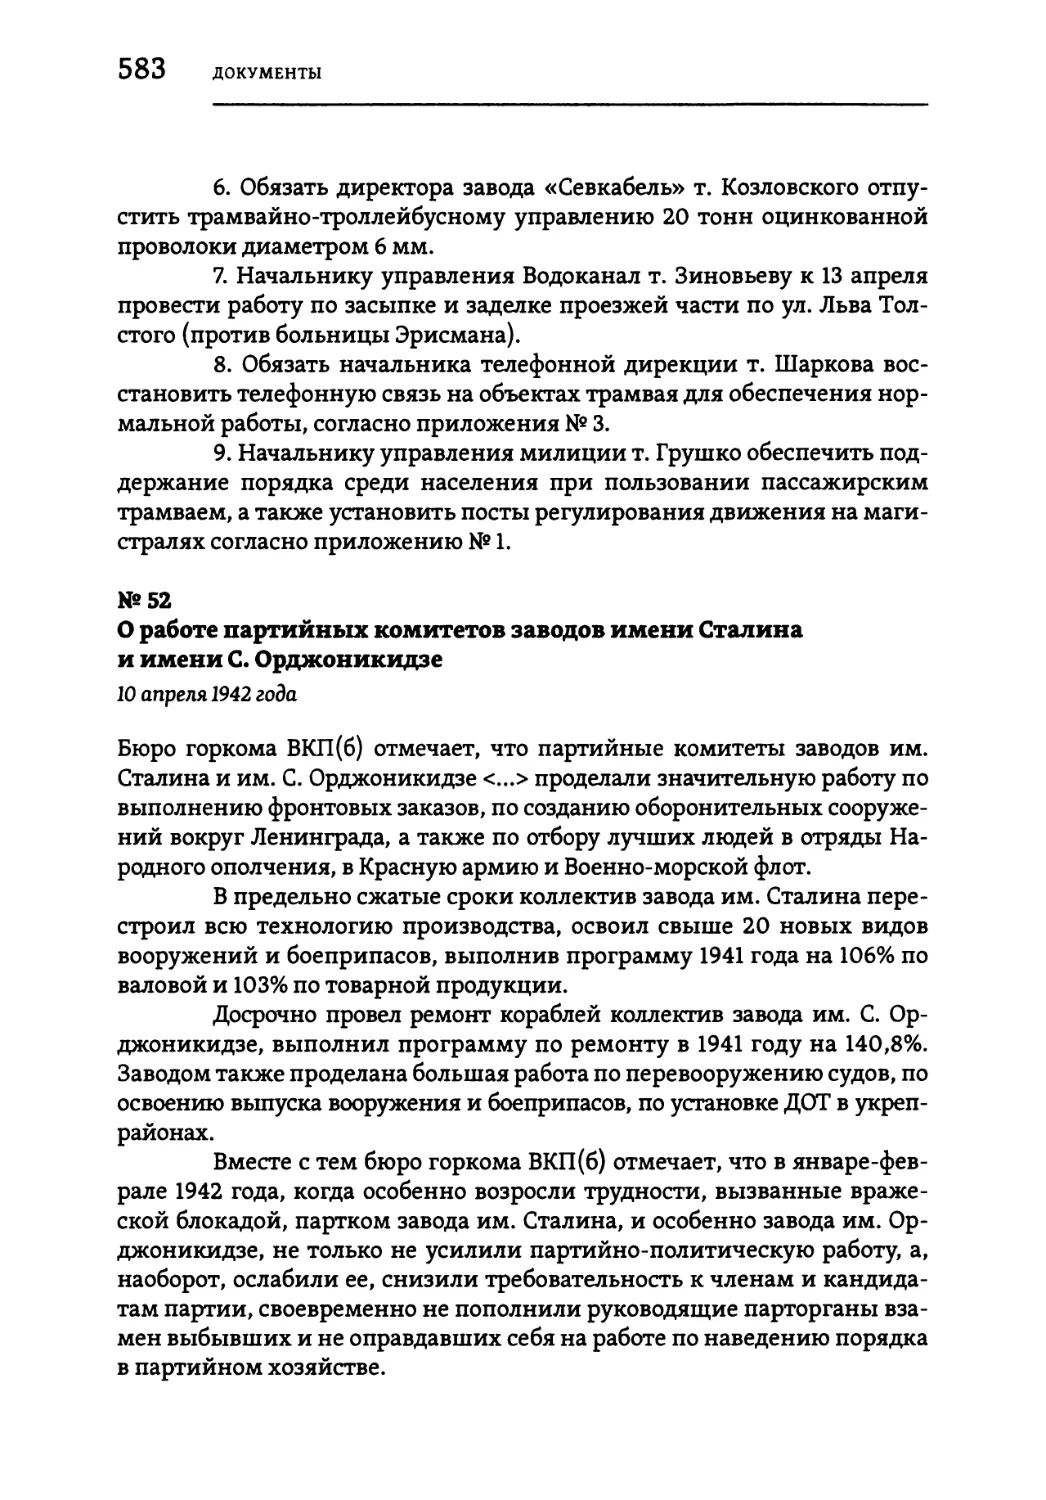 №52 О работе партийных комитетов заводов имени Сталина и имени С. Орджоникидзе